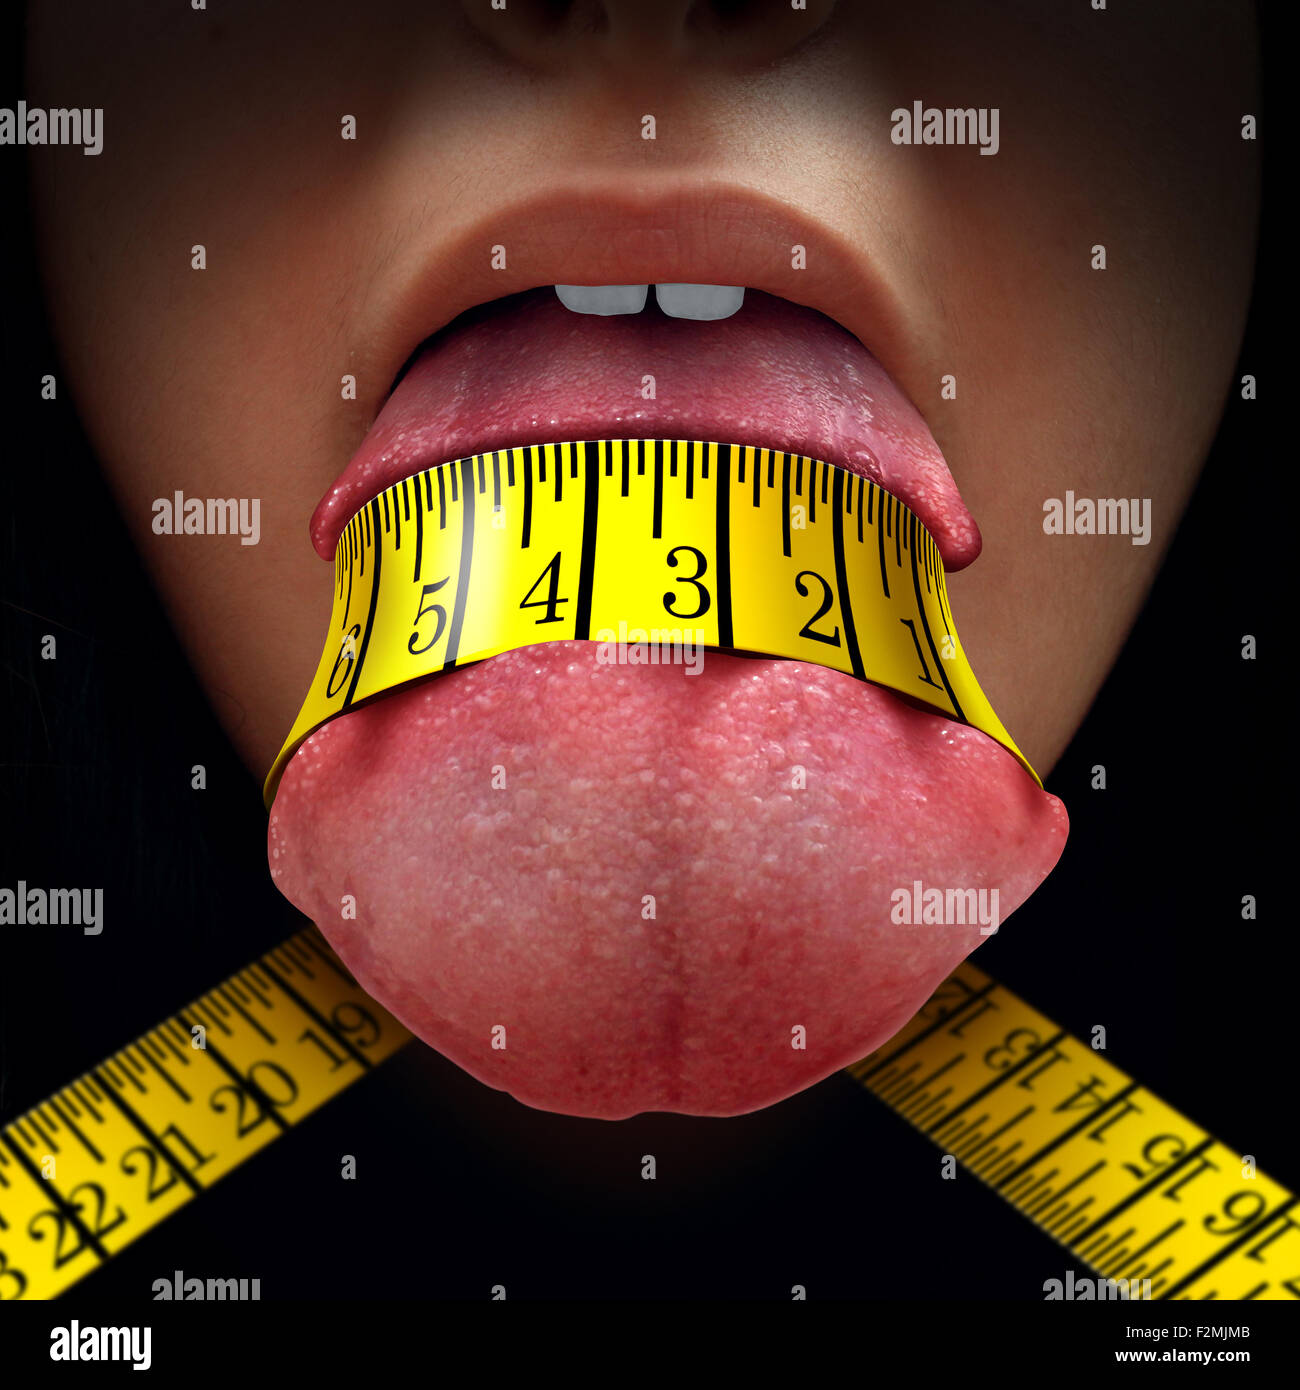 Calorie nozione di restrizione come una misura di nastro avvolto stretto intorno a una lingua umana come una dieta di digiuno o diete simbolo per anoressia o controllo della dieta. Foto Stock